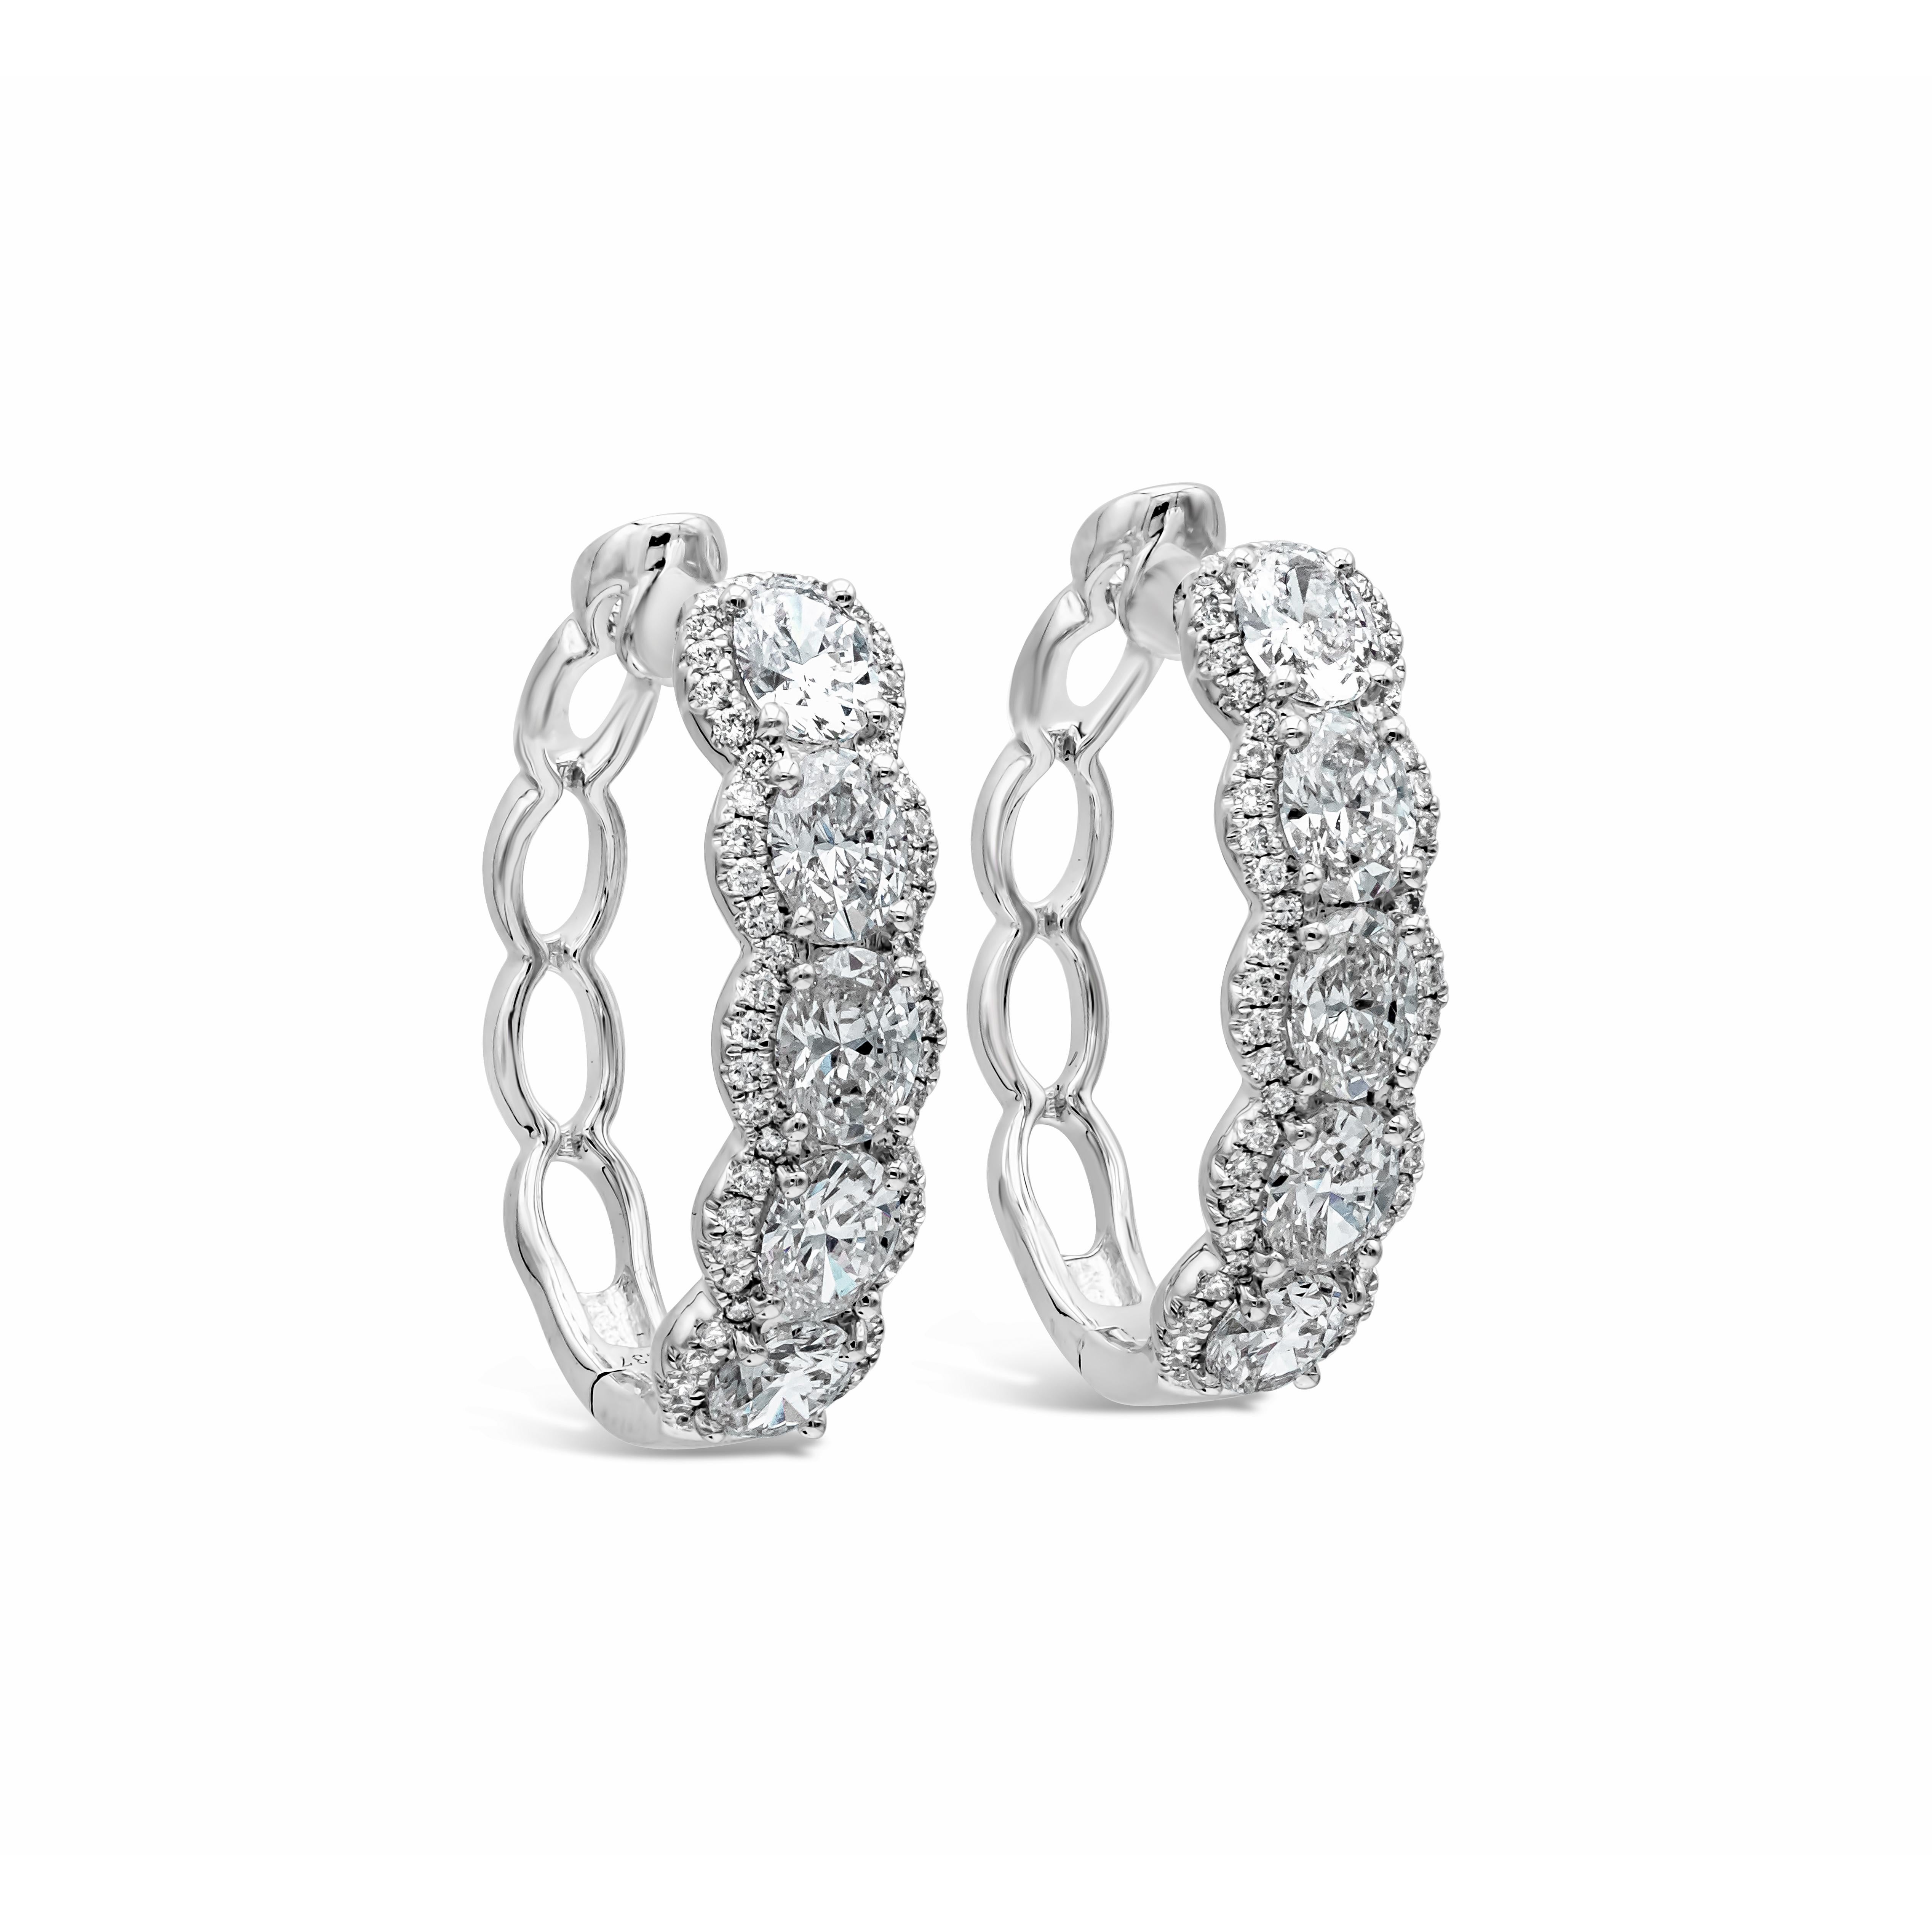 Cette magnifique paire de boucles d'oreilles en forme d'anneau ovale met en valeur cinq diamants de taille ovale sur chaque boucle d'oreille. Souligné sur deux côtés par une rangée de diamants ronds brillants. Les diamants pèsent 2,73 carats au